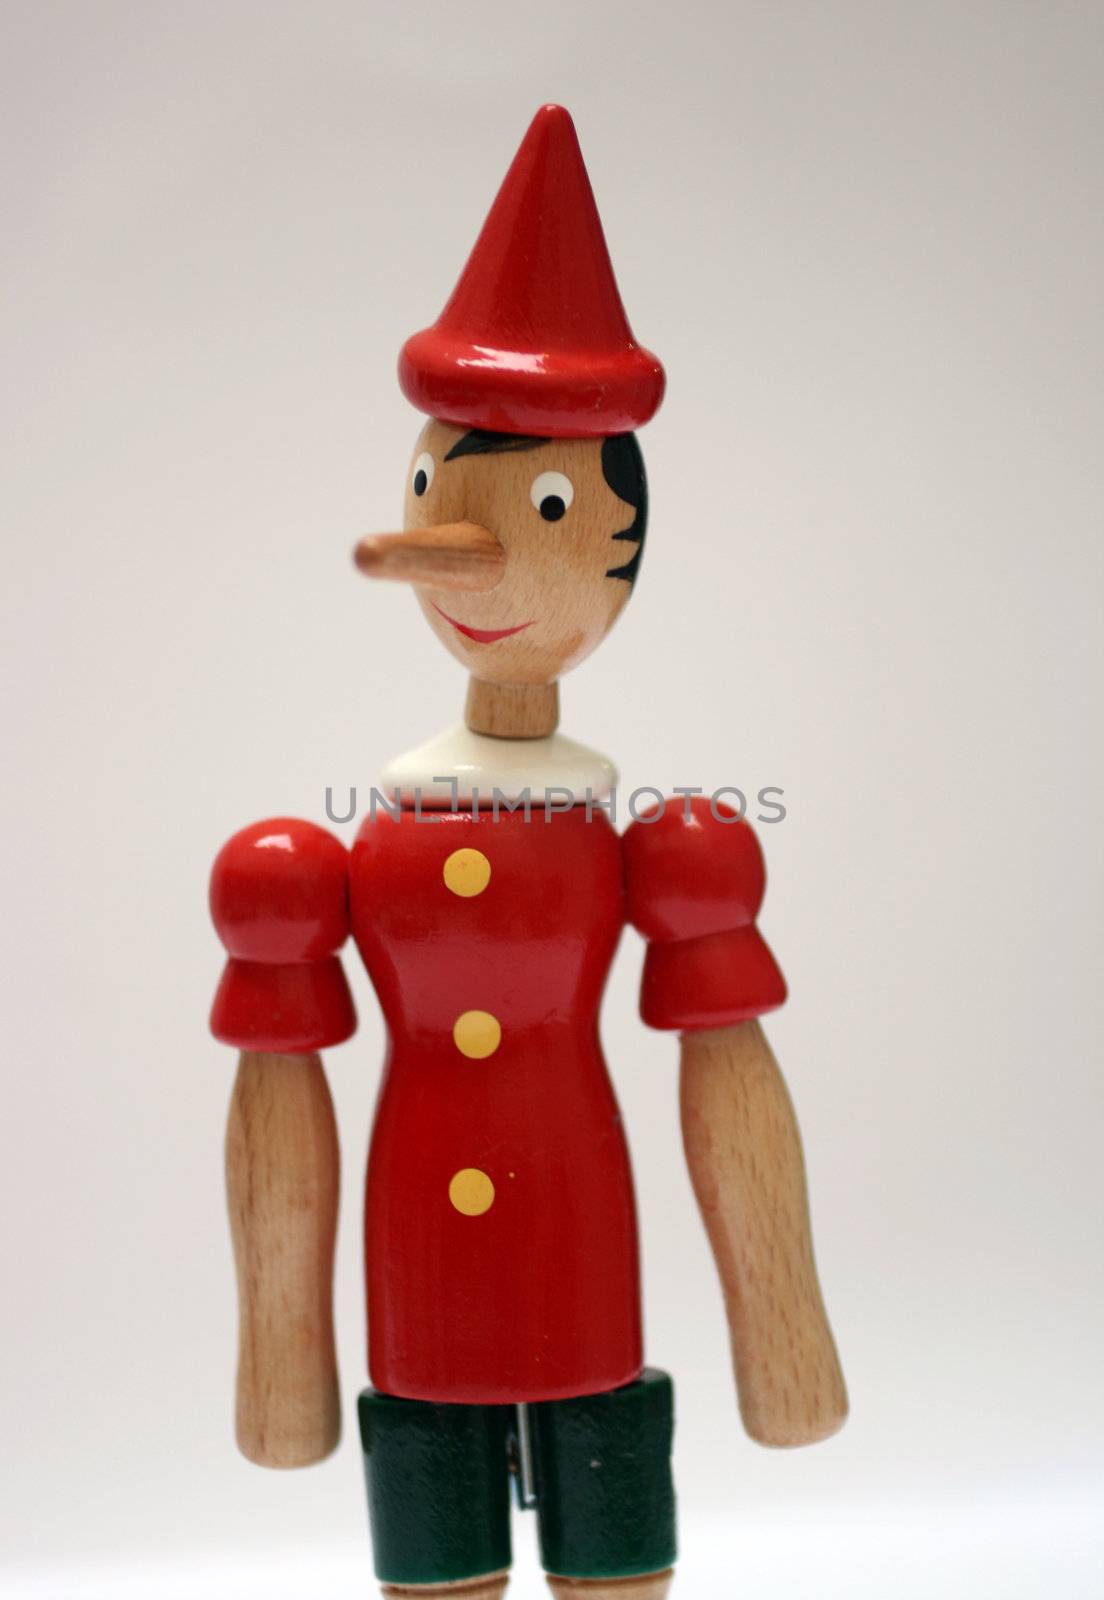 wooden statue of pinocchio representing a liar